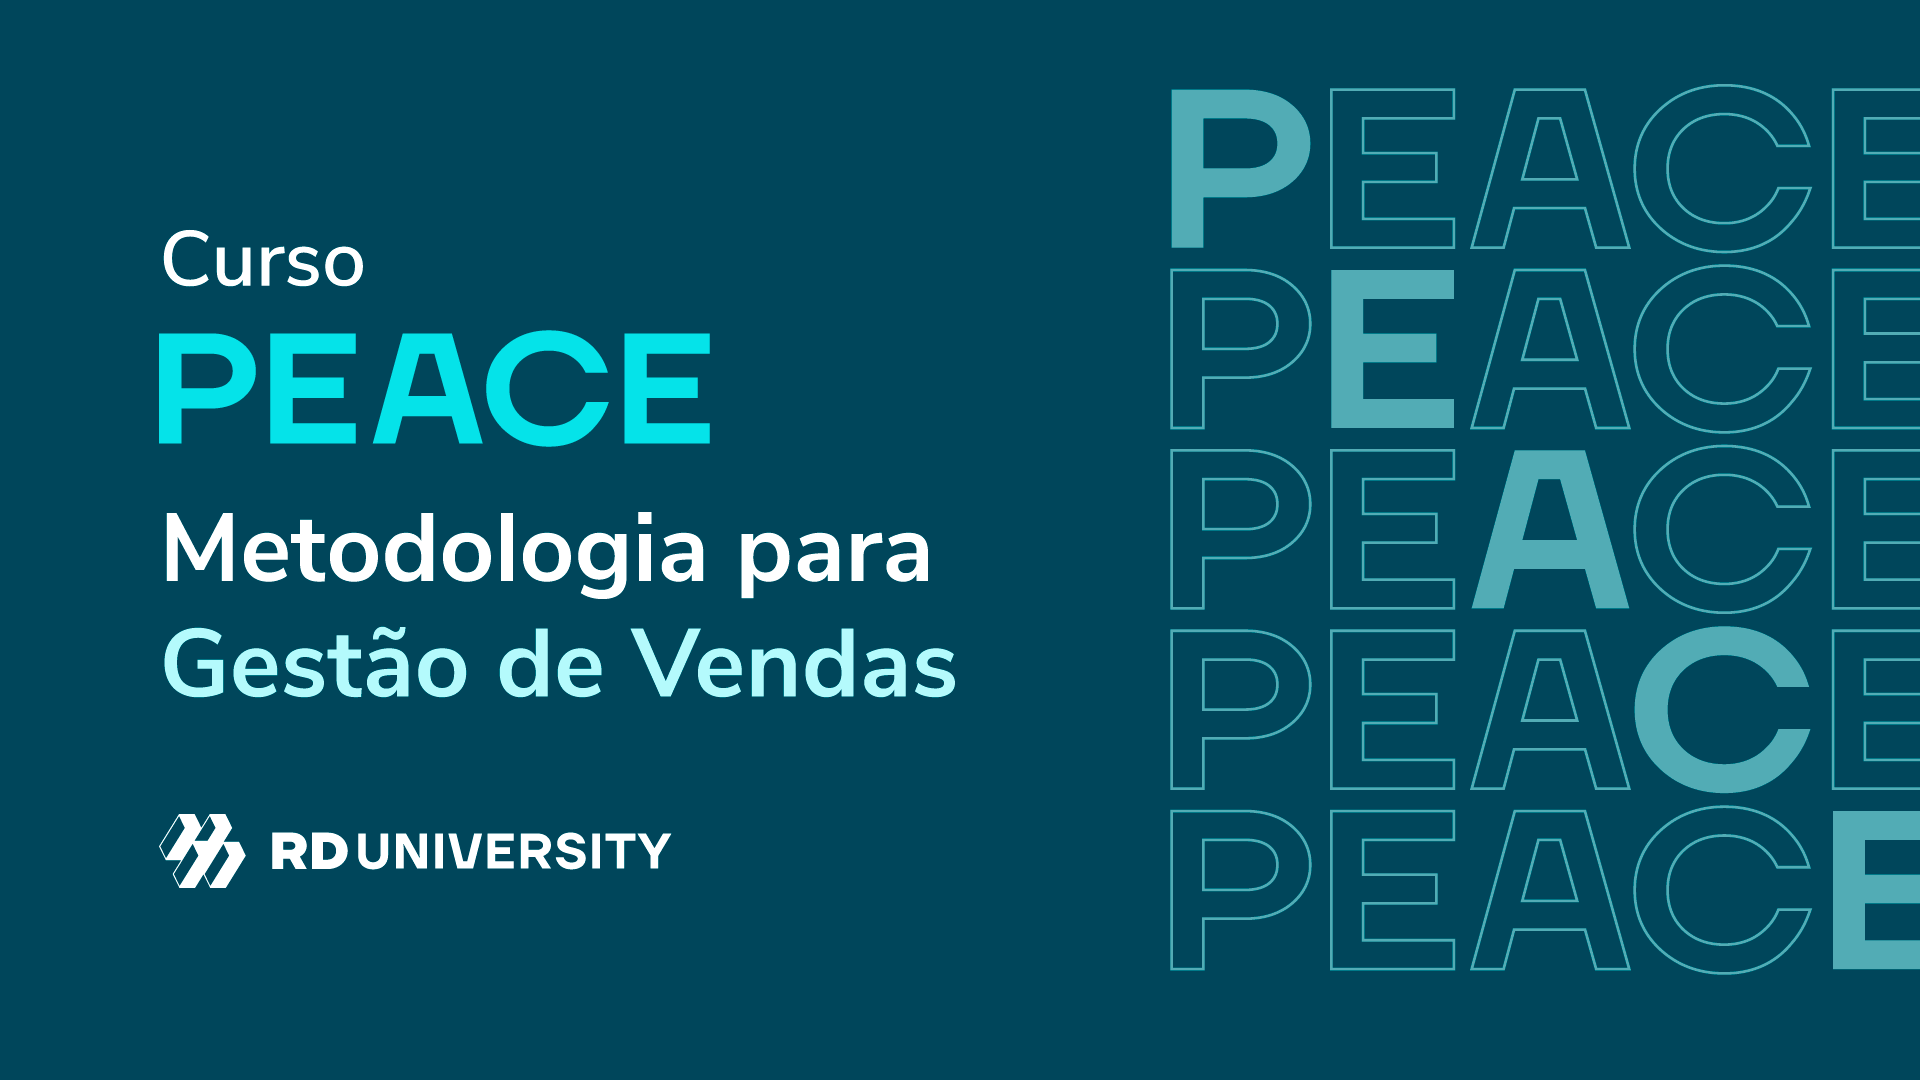 PEACE: Metodologia para Gestão de Vendas